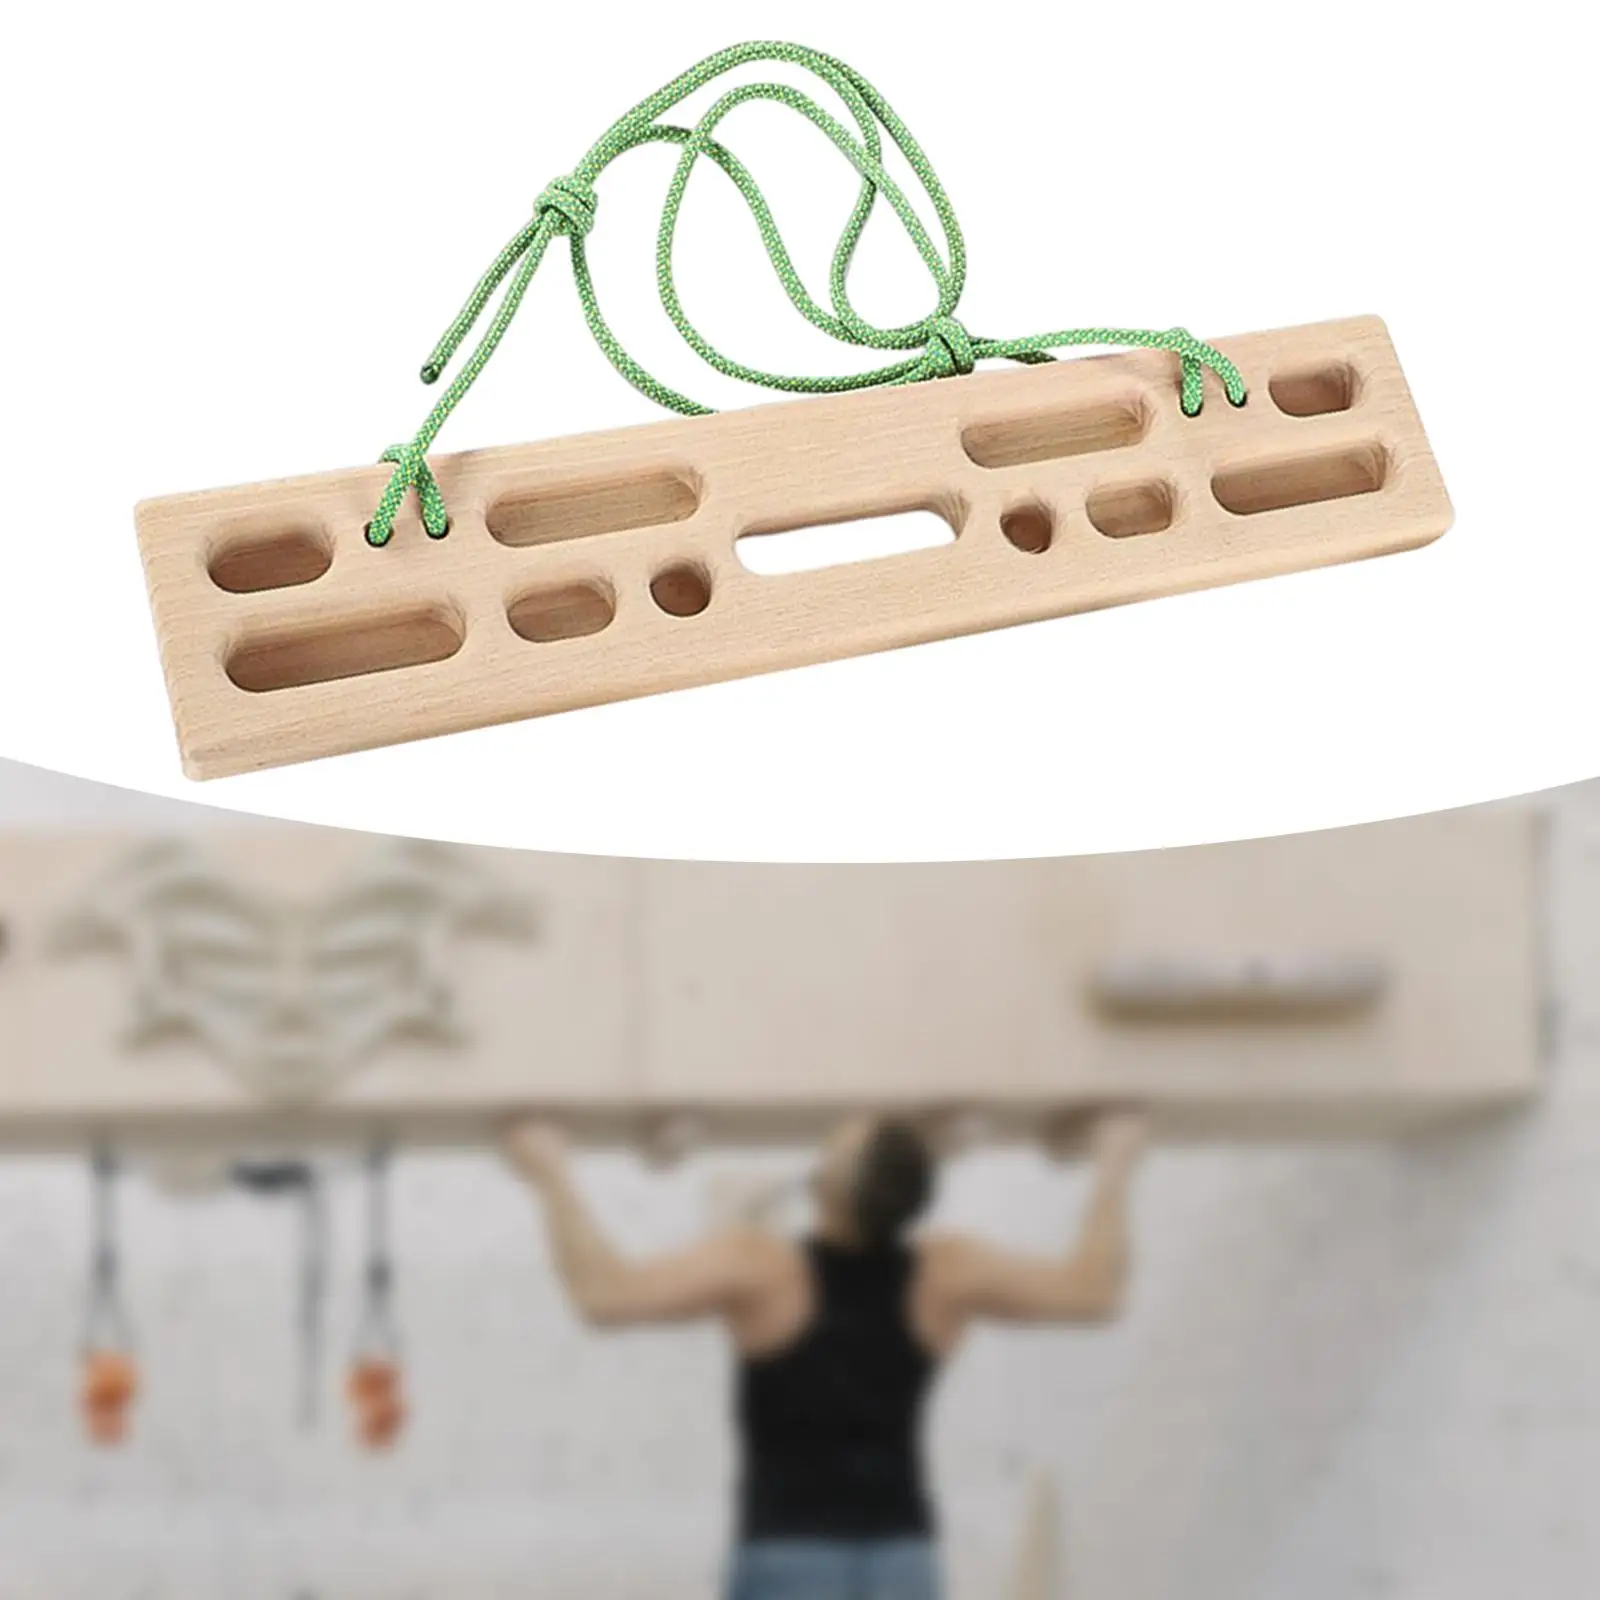 Climbing Hangboard Fingerboard 50cmx10cm for Bouldering Athletes Indoor